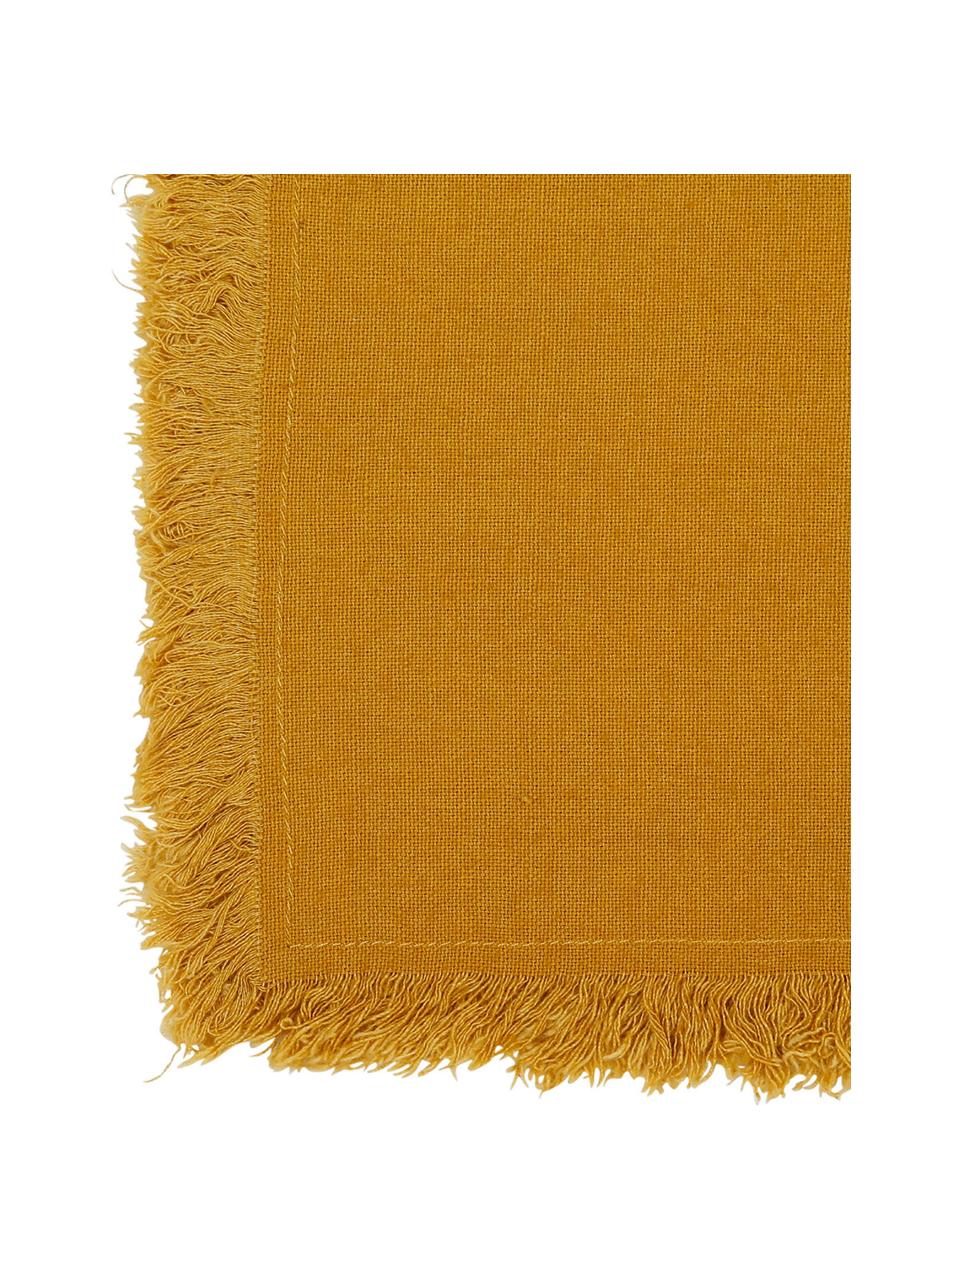 Serwetka z bawełny z frędzlami Nalia, 2 szt., Bawełna, Żółty, S 35 x D 35 cm